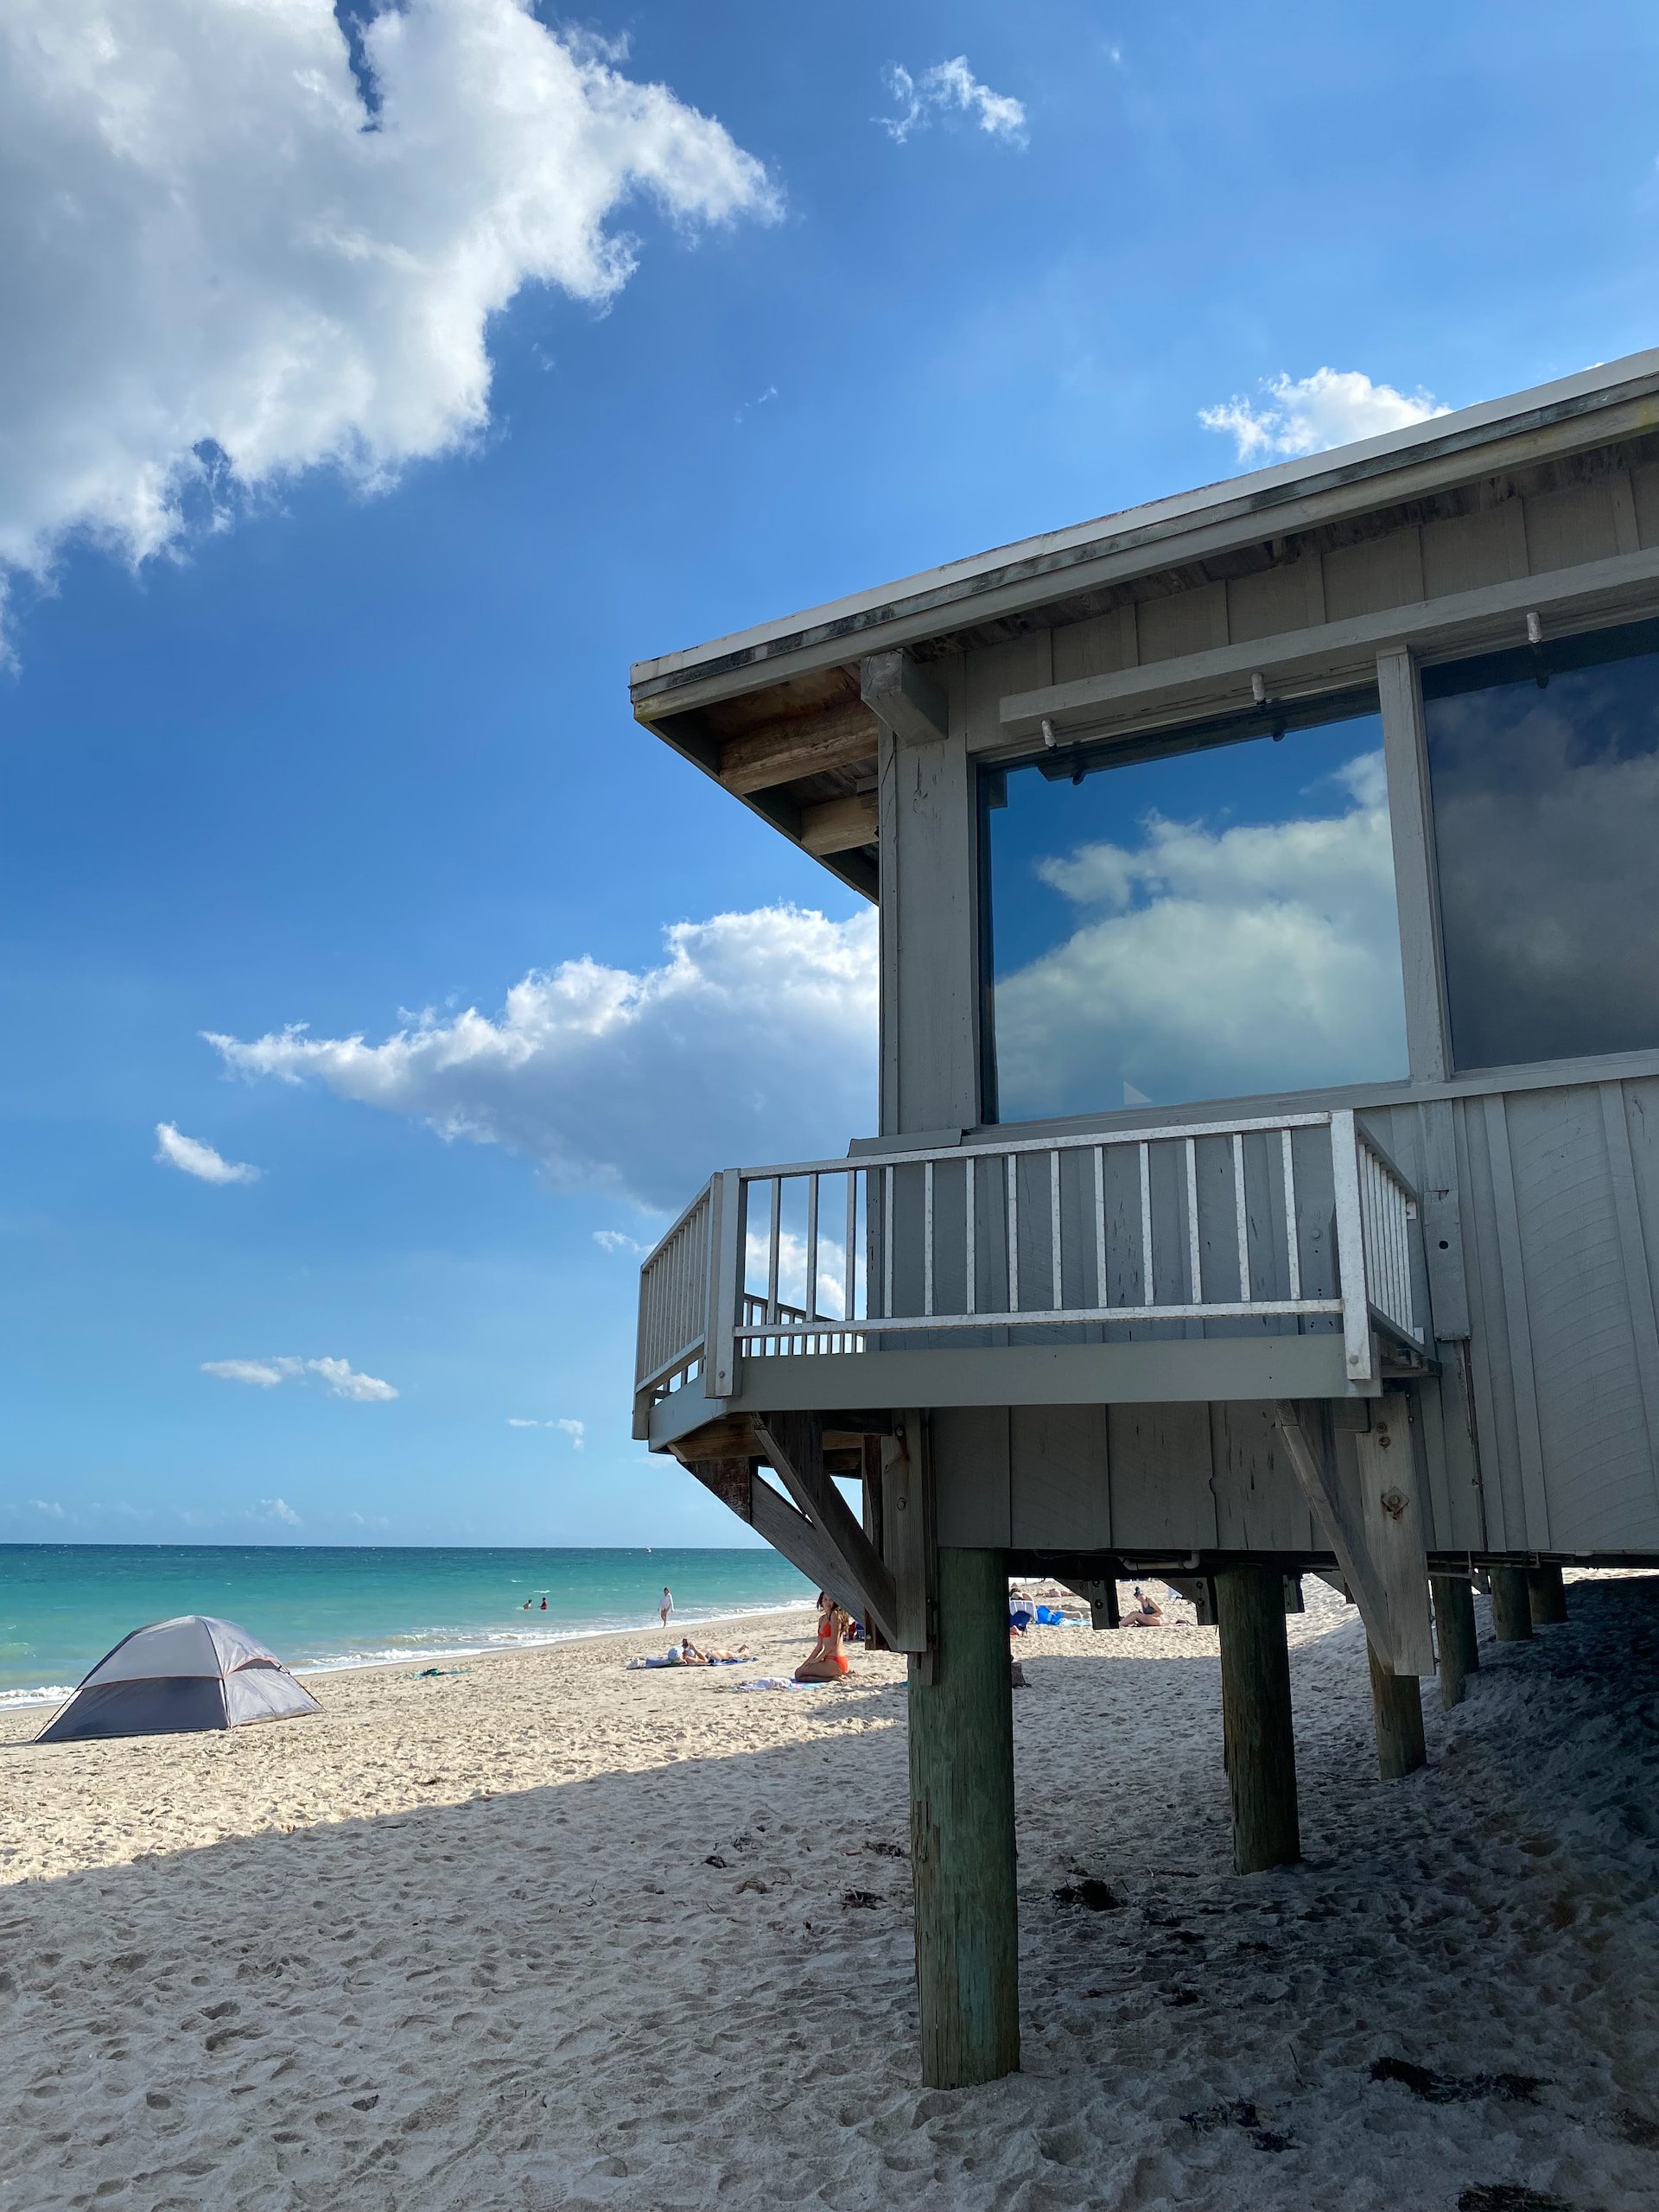 House on the beach near Hialeah, Florida